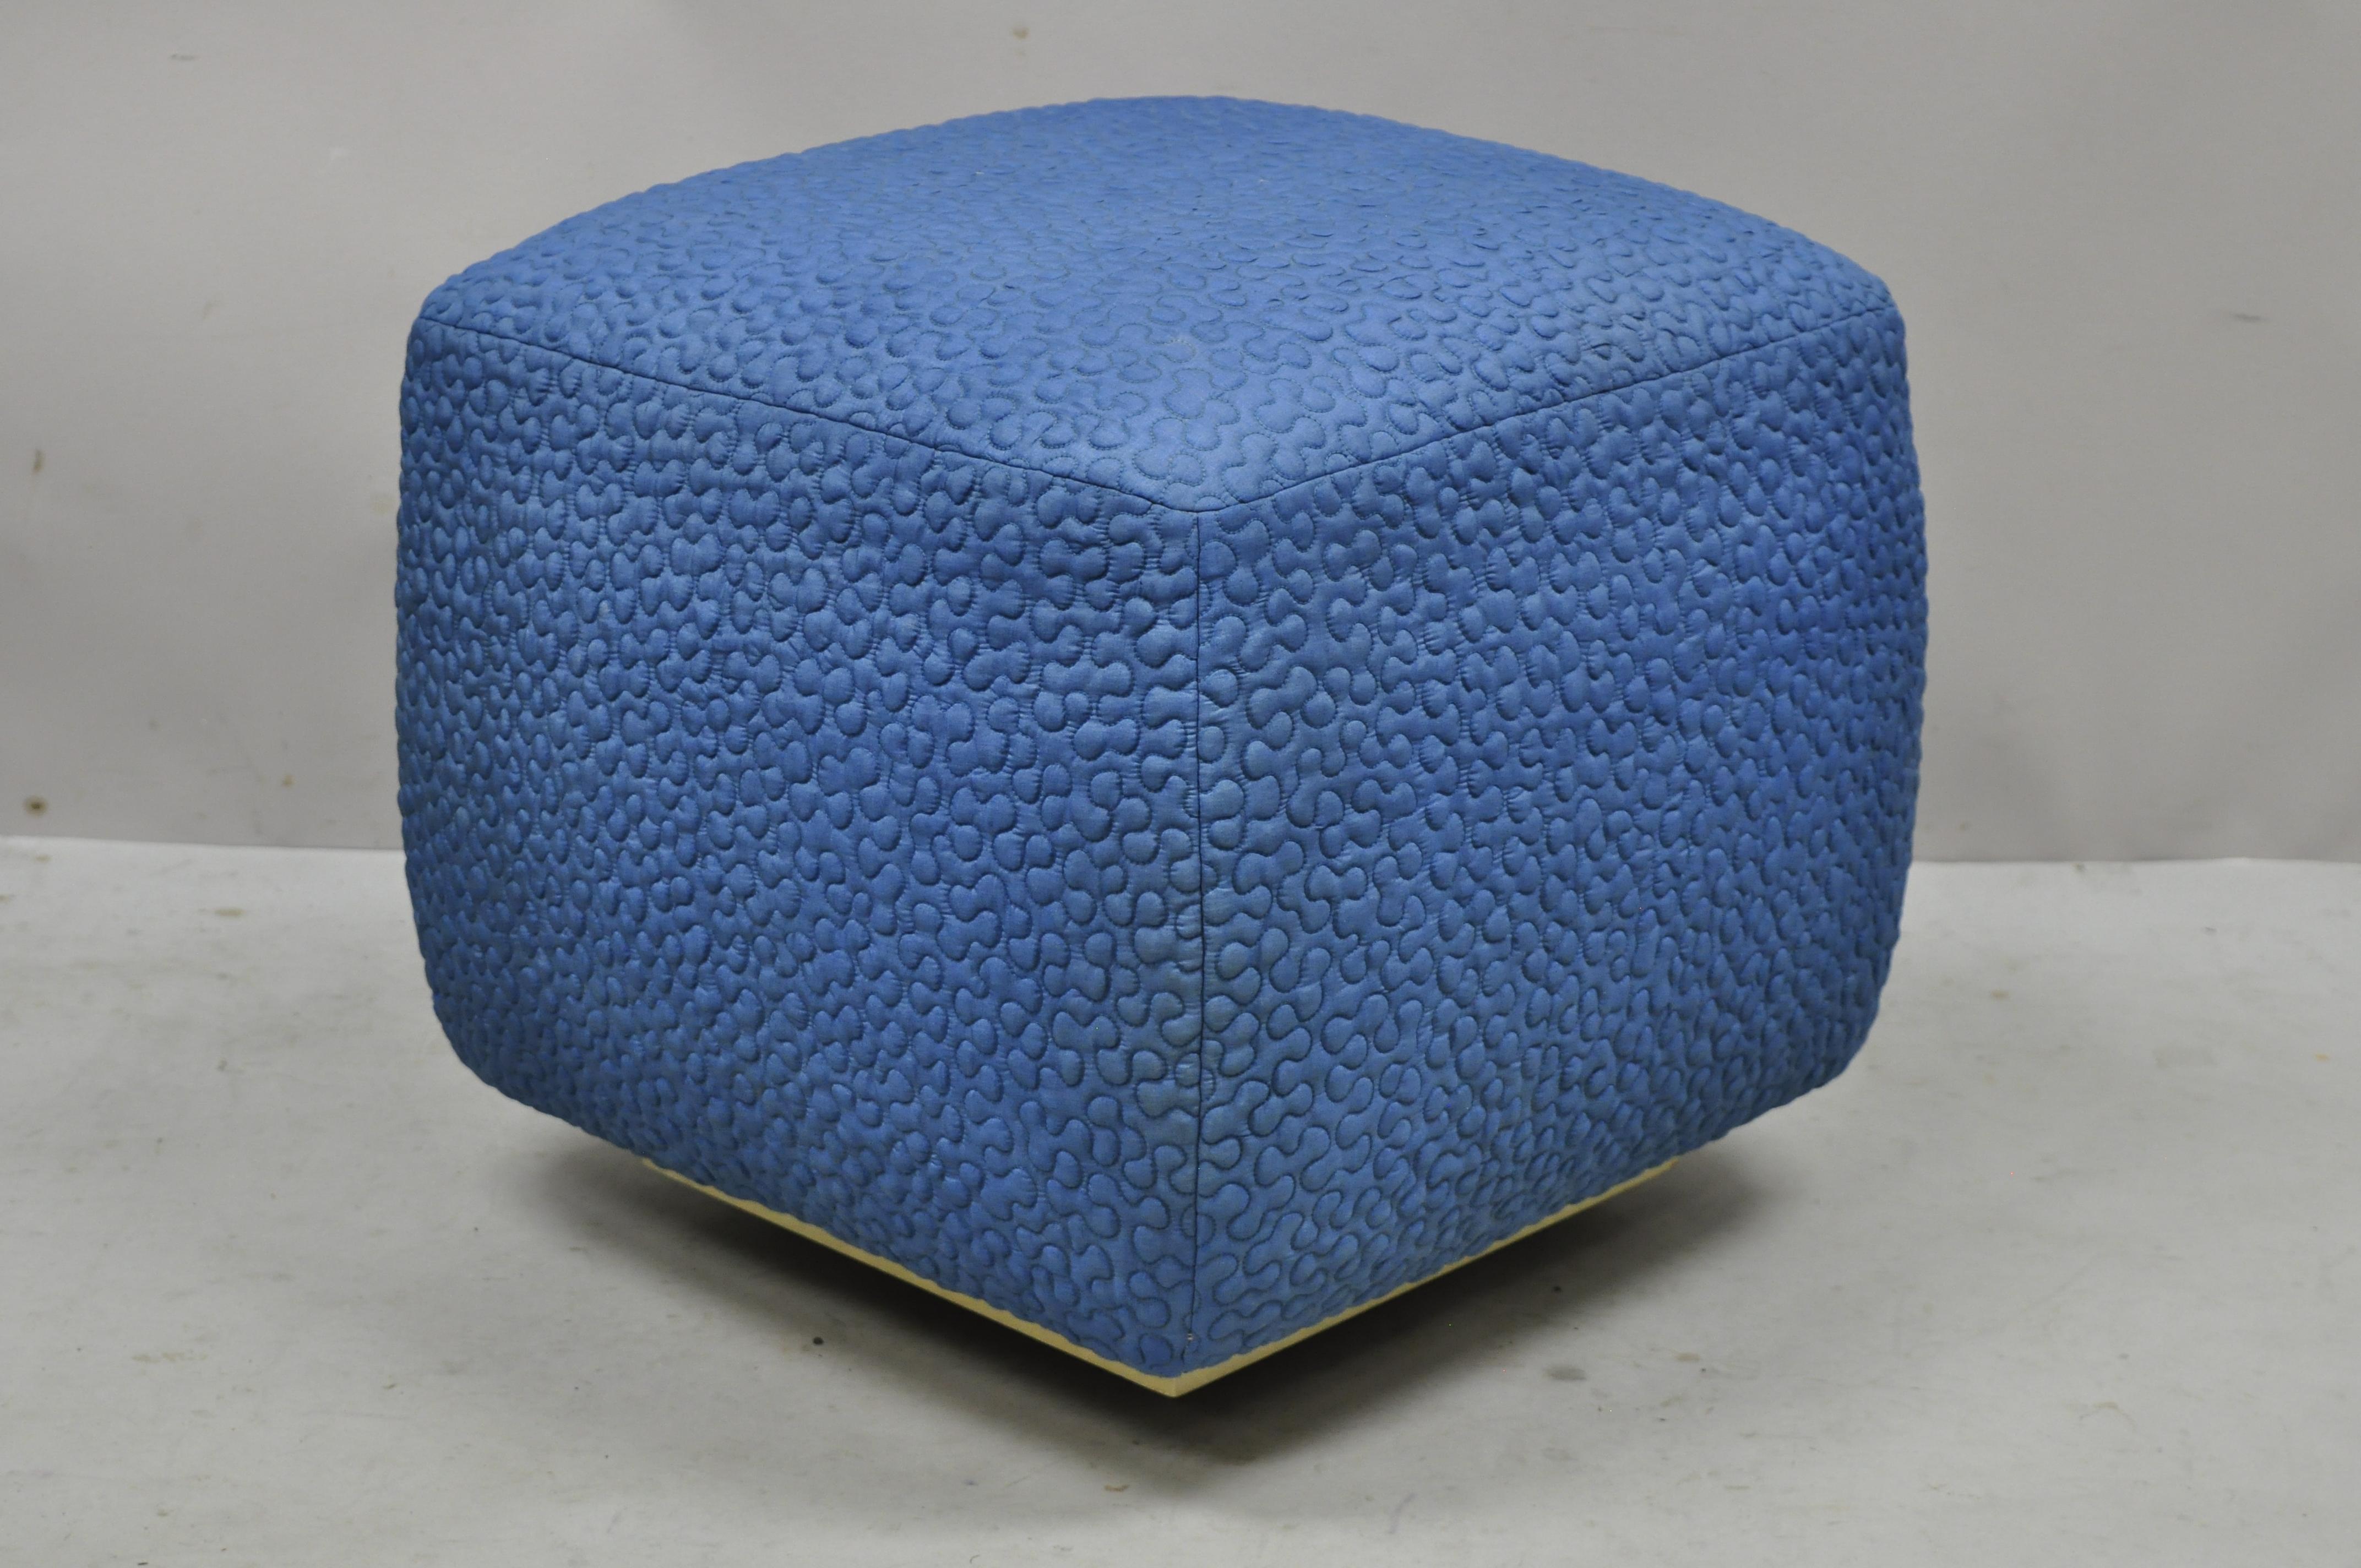 Vintage 1960s square pouf ottoman blue stitched fabric rolling casters wheels. L'article présente un tissu bleu surpiqué des années 1960, un socle en bois avec roulettes, un cadre en bois massif, un très bel article vintage, des lignes modernistes